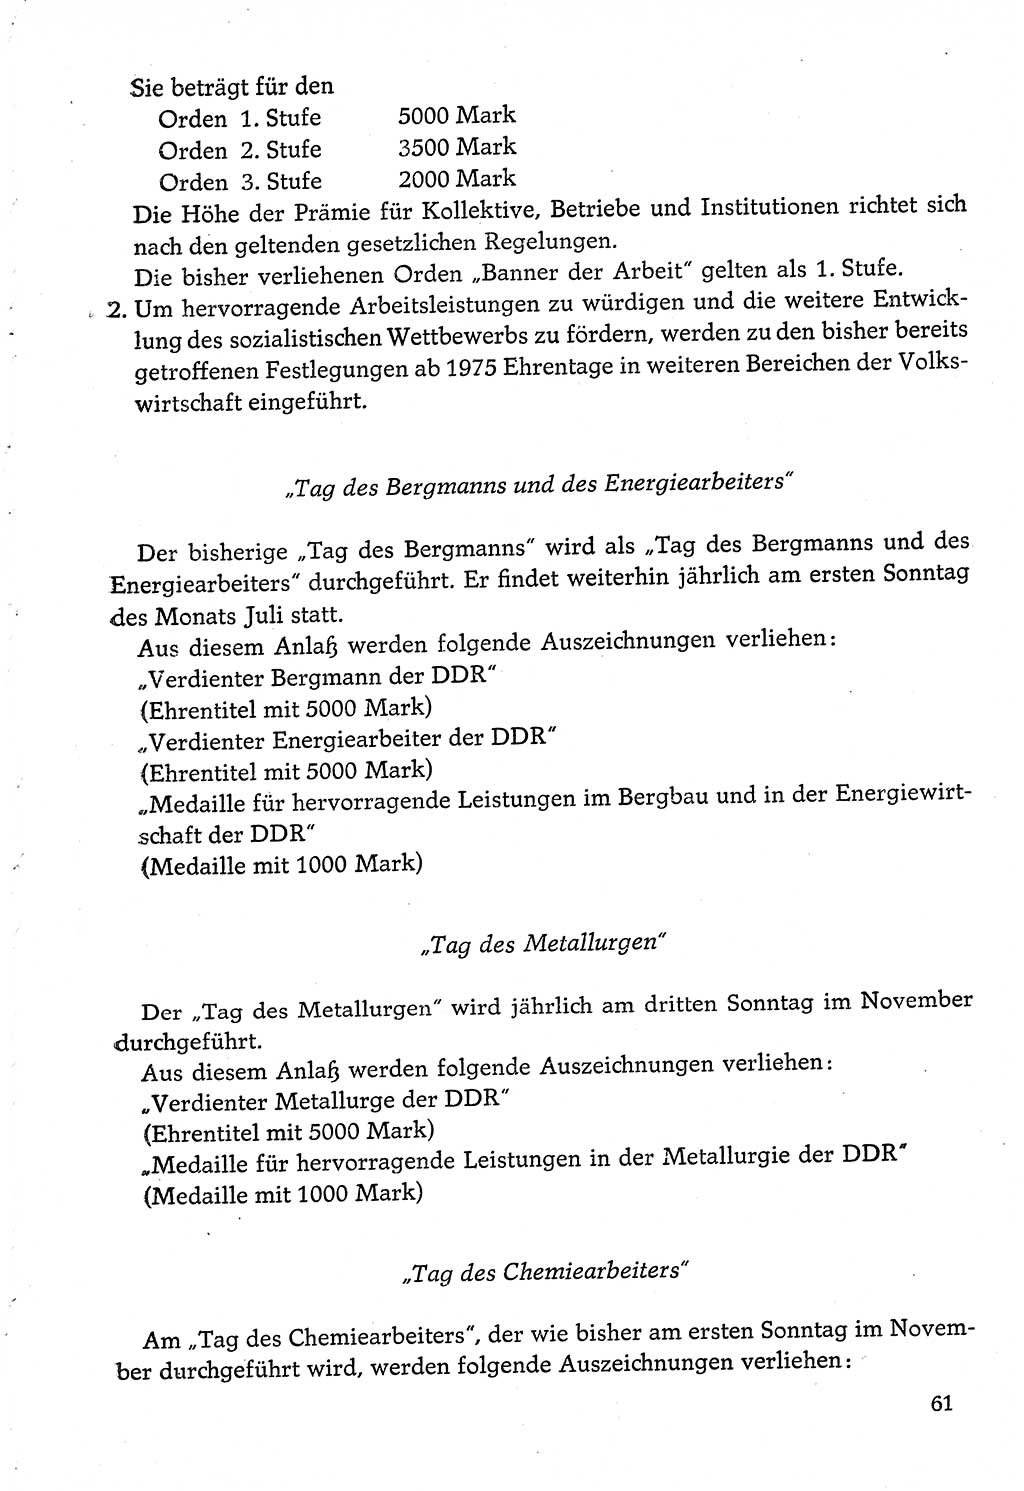 Dokumente der Sozialistischen Einheitspartei Deutschlands (SED) [Deutsche Demokratische Republik (DDR)] 1974-1975, Seite 61 (Dok. SED DDR 1978, Bd. ⅩⅤ, S. 61)